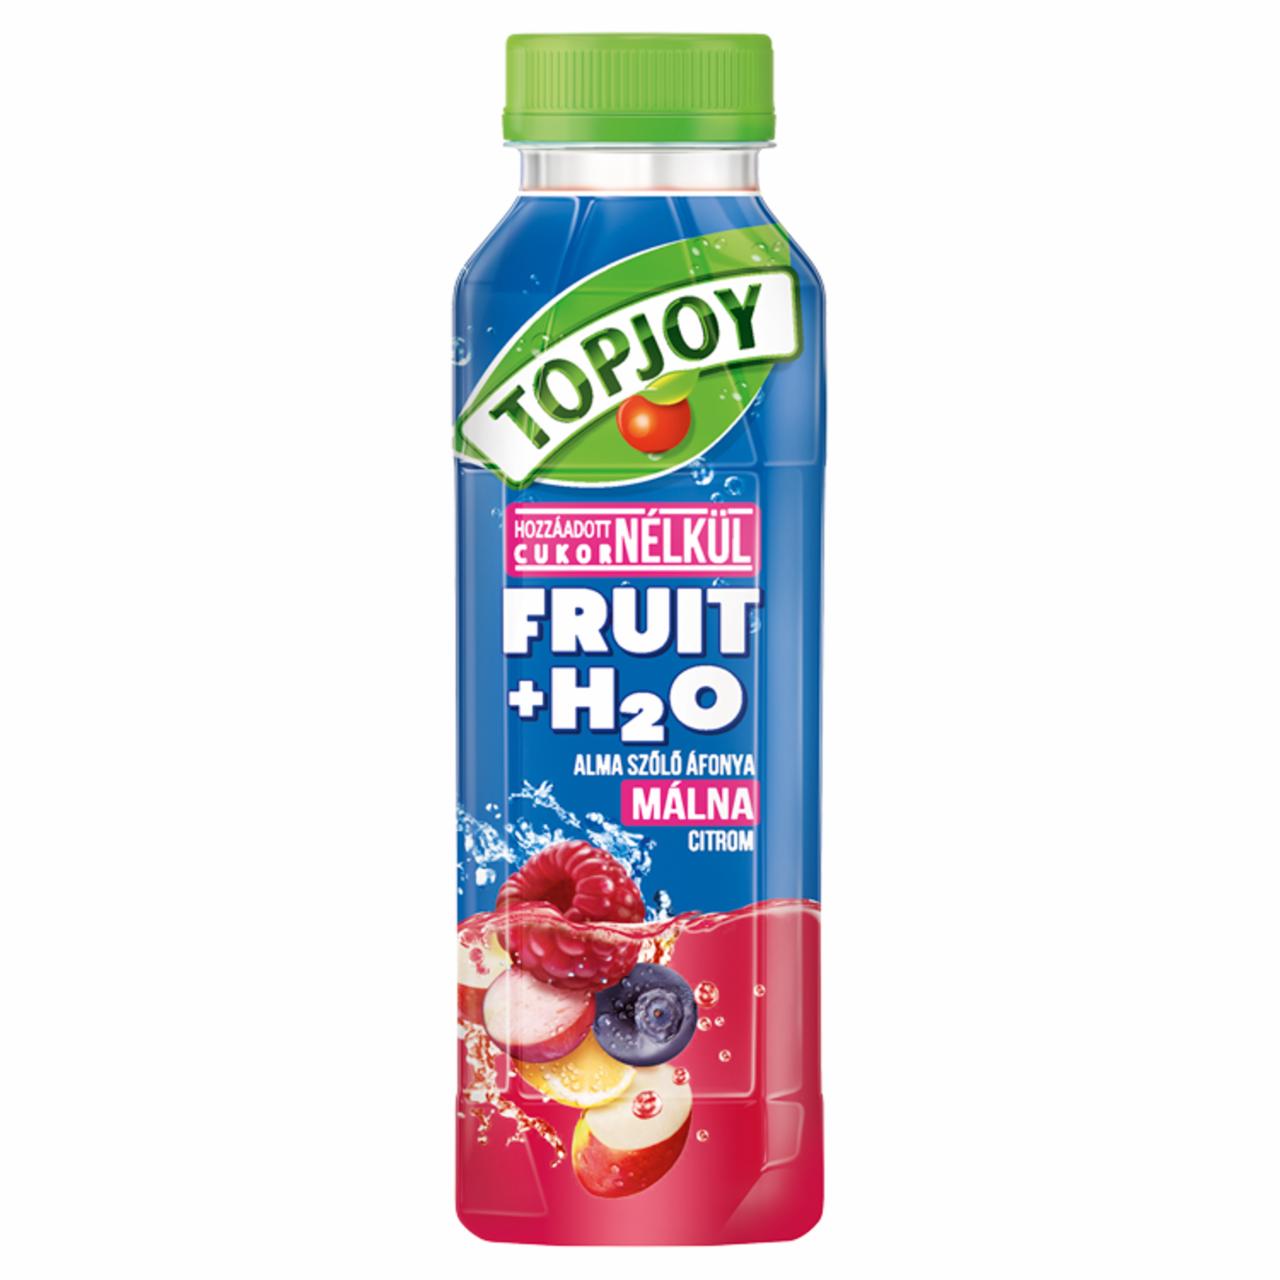 Képek - Topjoy Fruit+H₂O alma, szőlő, áfonya, málna, citrom gyümölcsital hozzáadott E-vitaminnal 400 ml